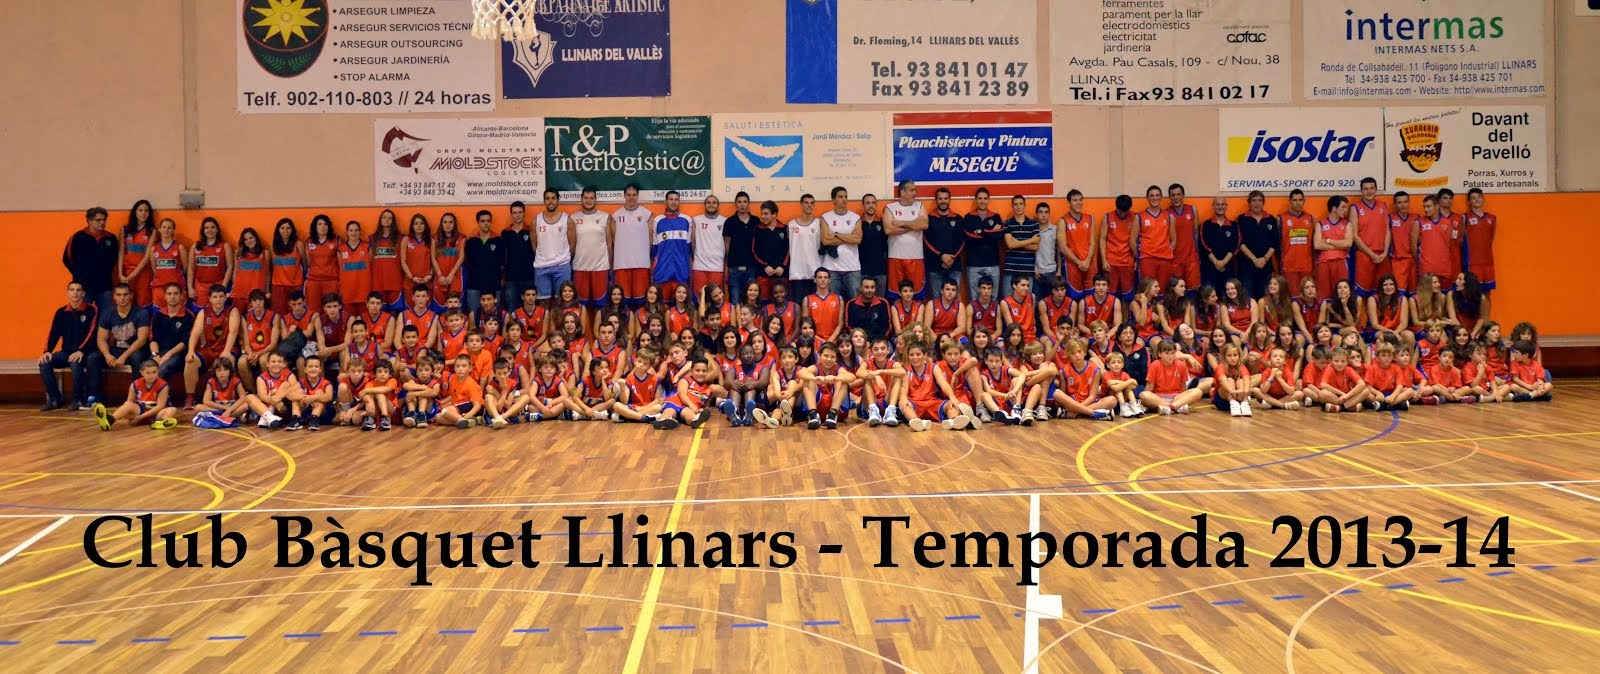 Club Bàsquet Llinars 2013-14